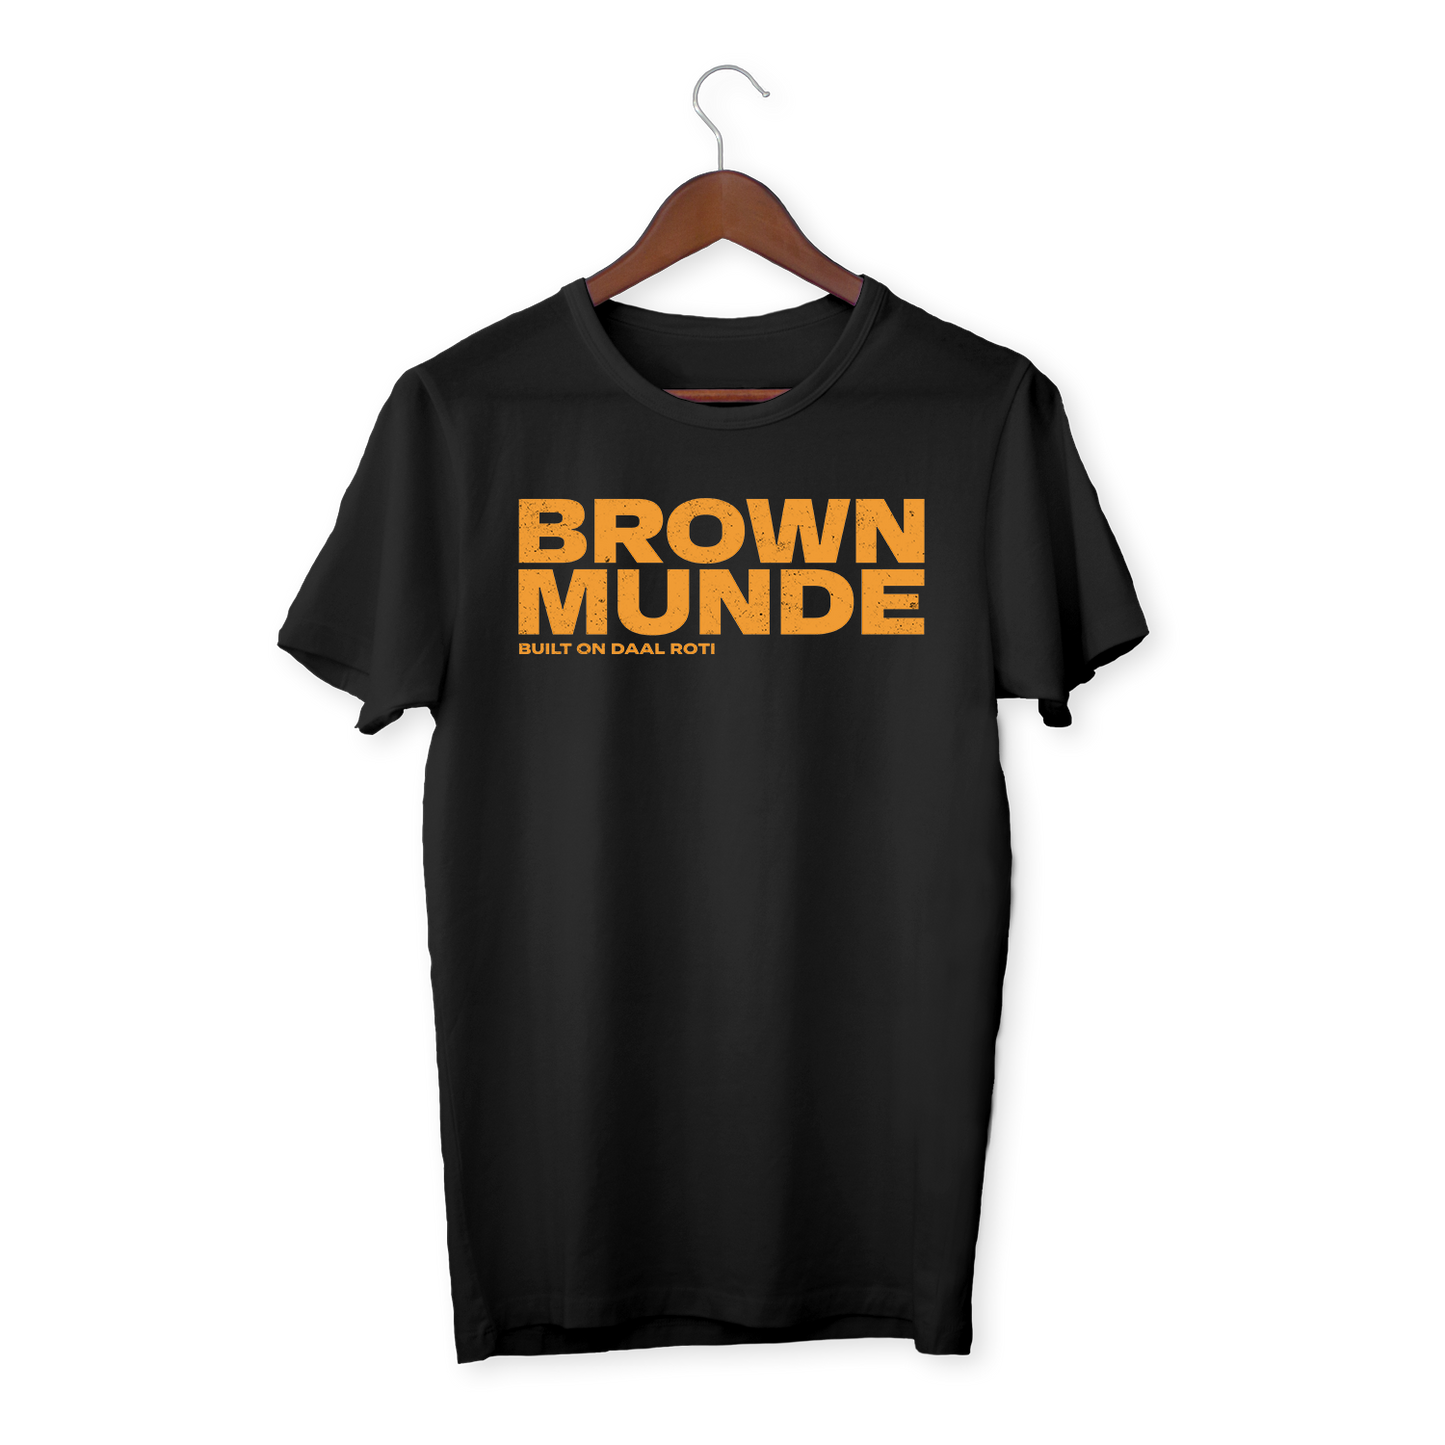 BROWN MUNDE - Unisex organic cotton t-shirt